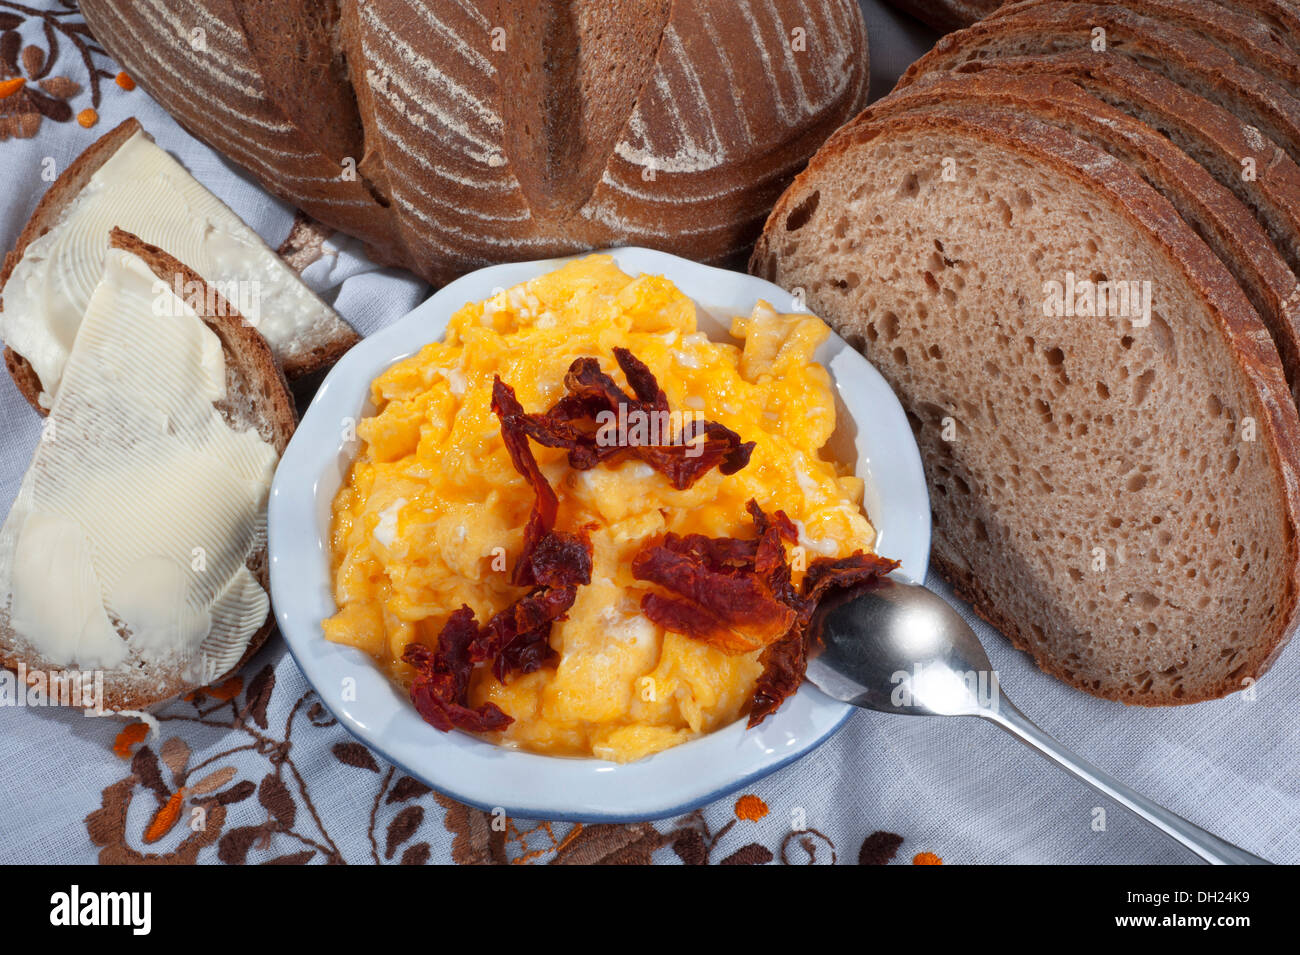 Eiern - Rührei mit Sonne trocknen Tomaten, Brot und butter Stockfoto